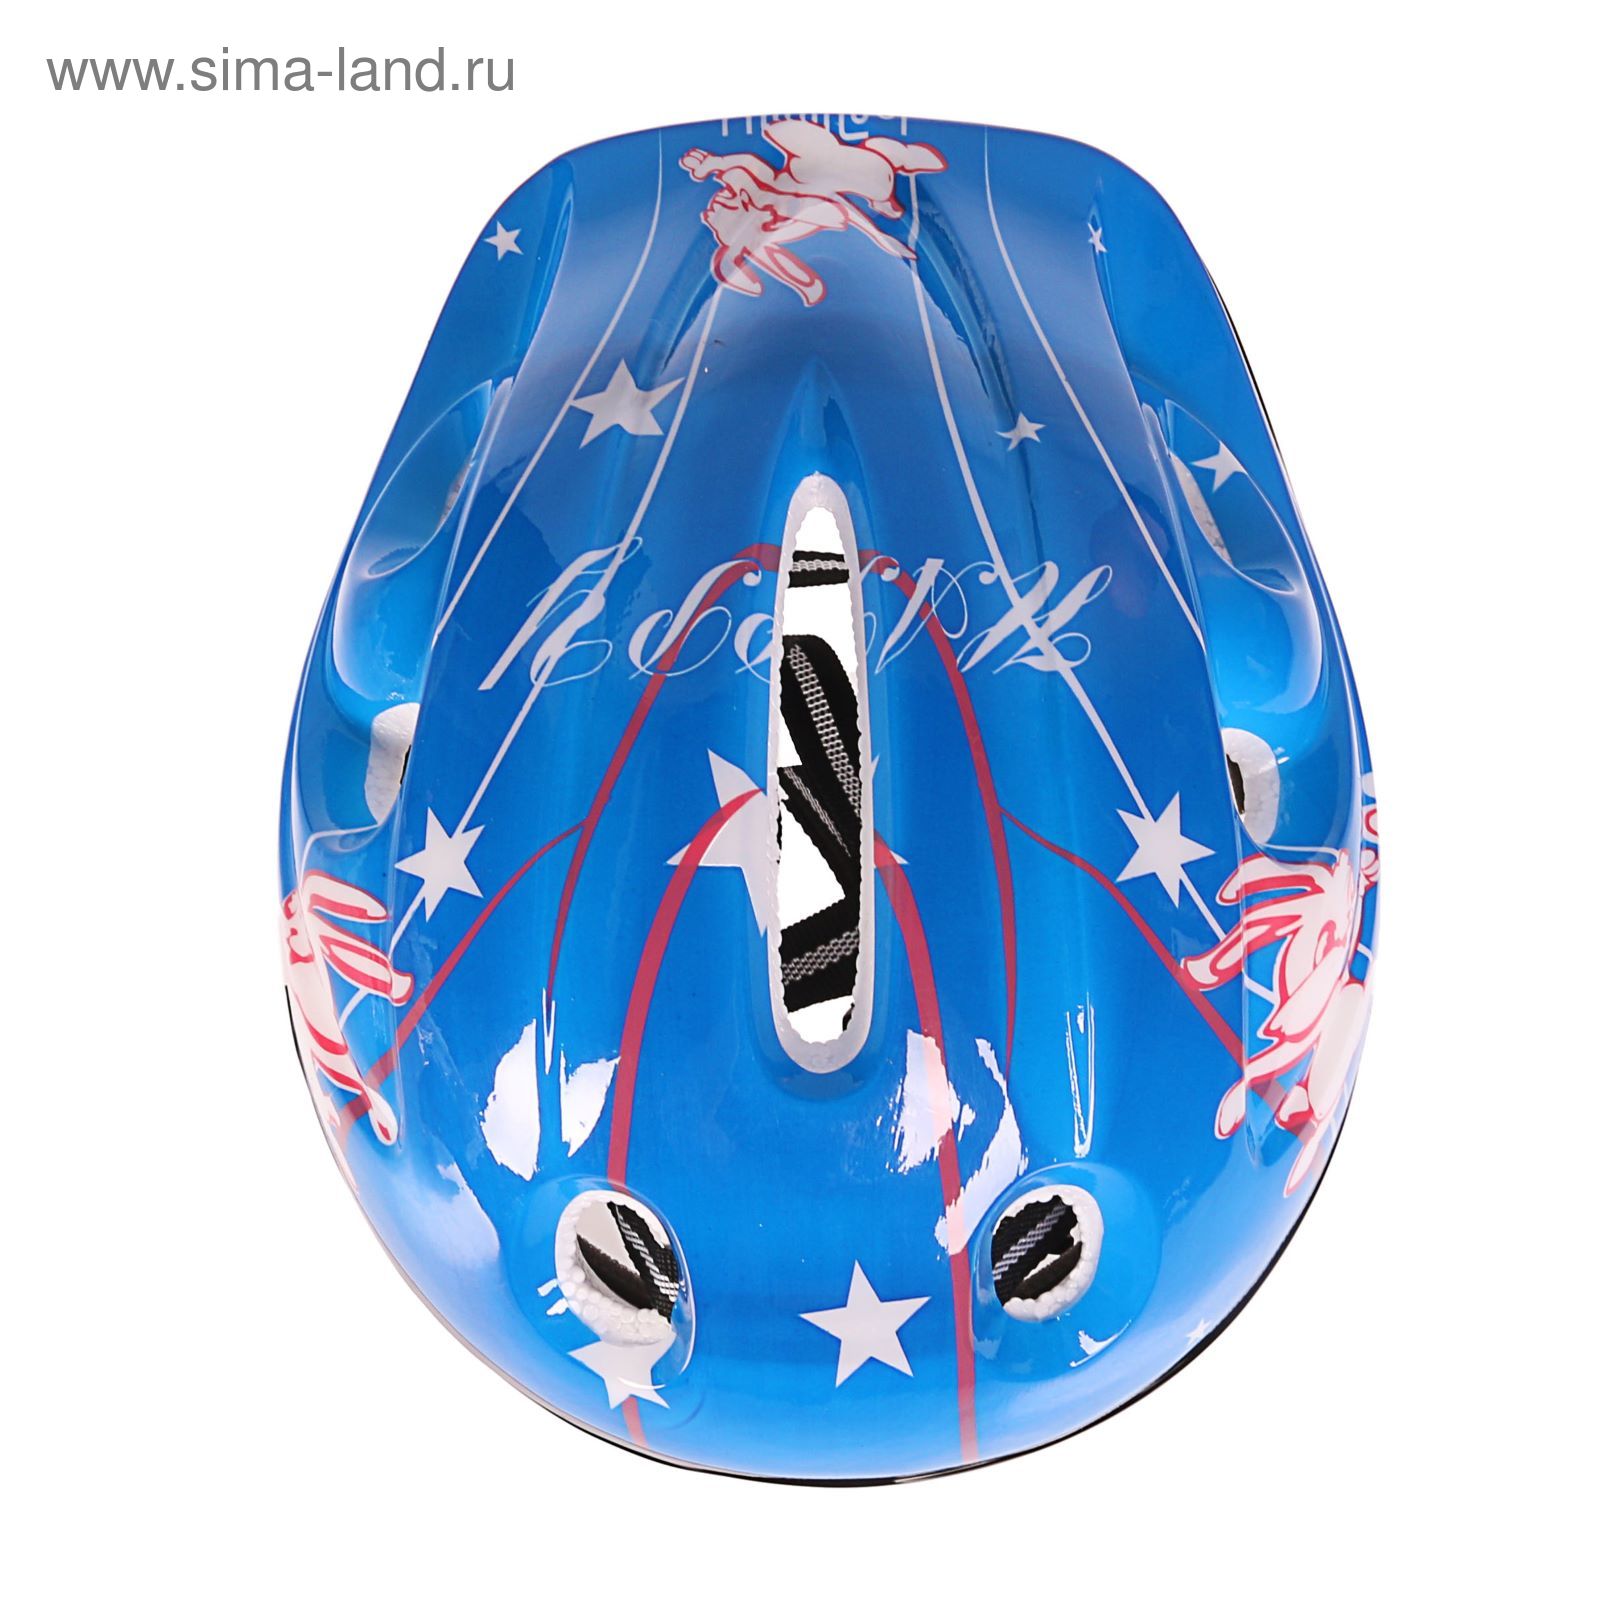 Шлем защитный OT-502 детский р S (52-54 см), цвет: синий